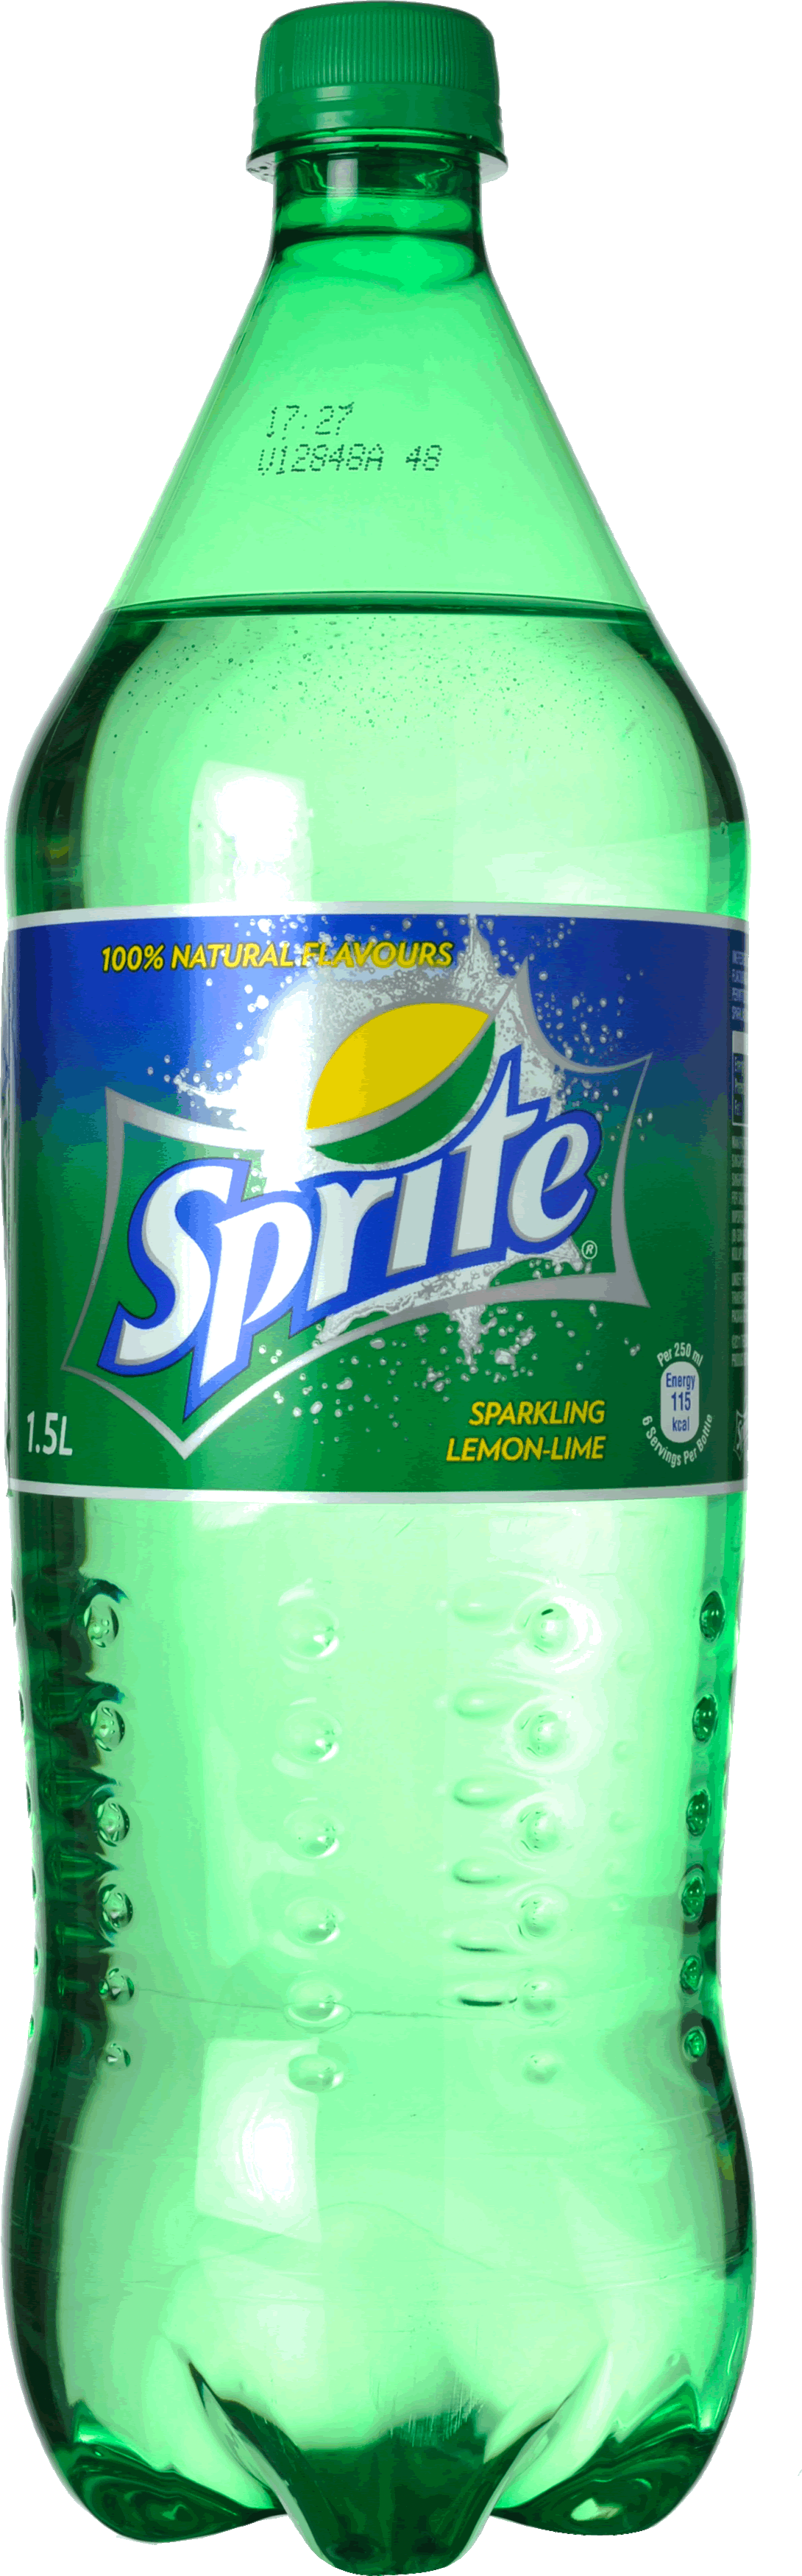 Sprite Png Bottle Image PNG Image